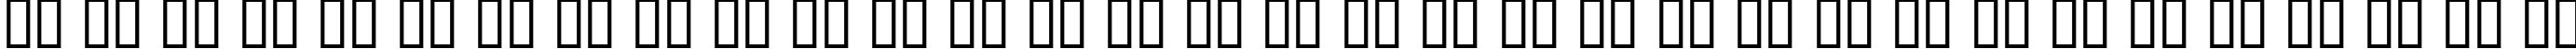 Пример написания русского алфавита шрифтом Contour Generator